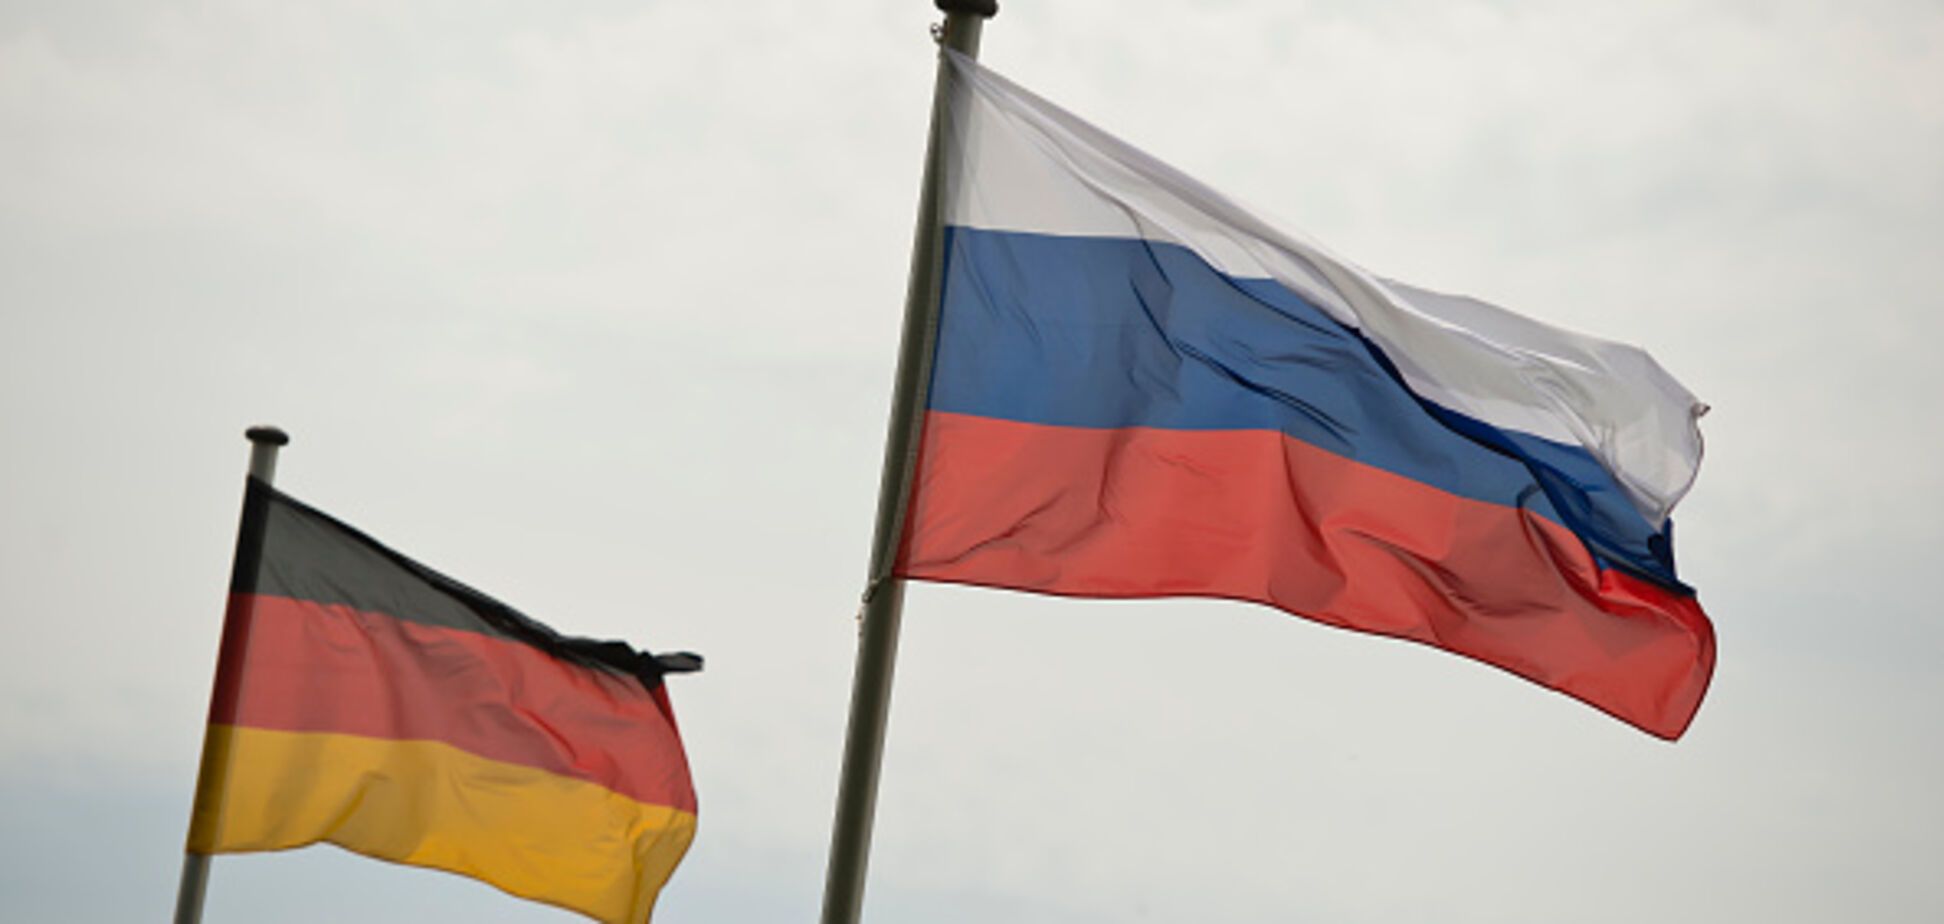 'Прискорбно для ЕС': стало известно, кто в Германии подрывает санкции против России